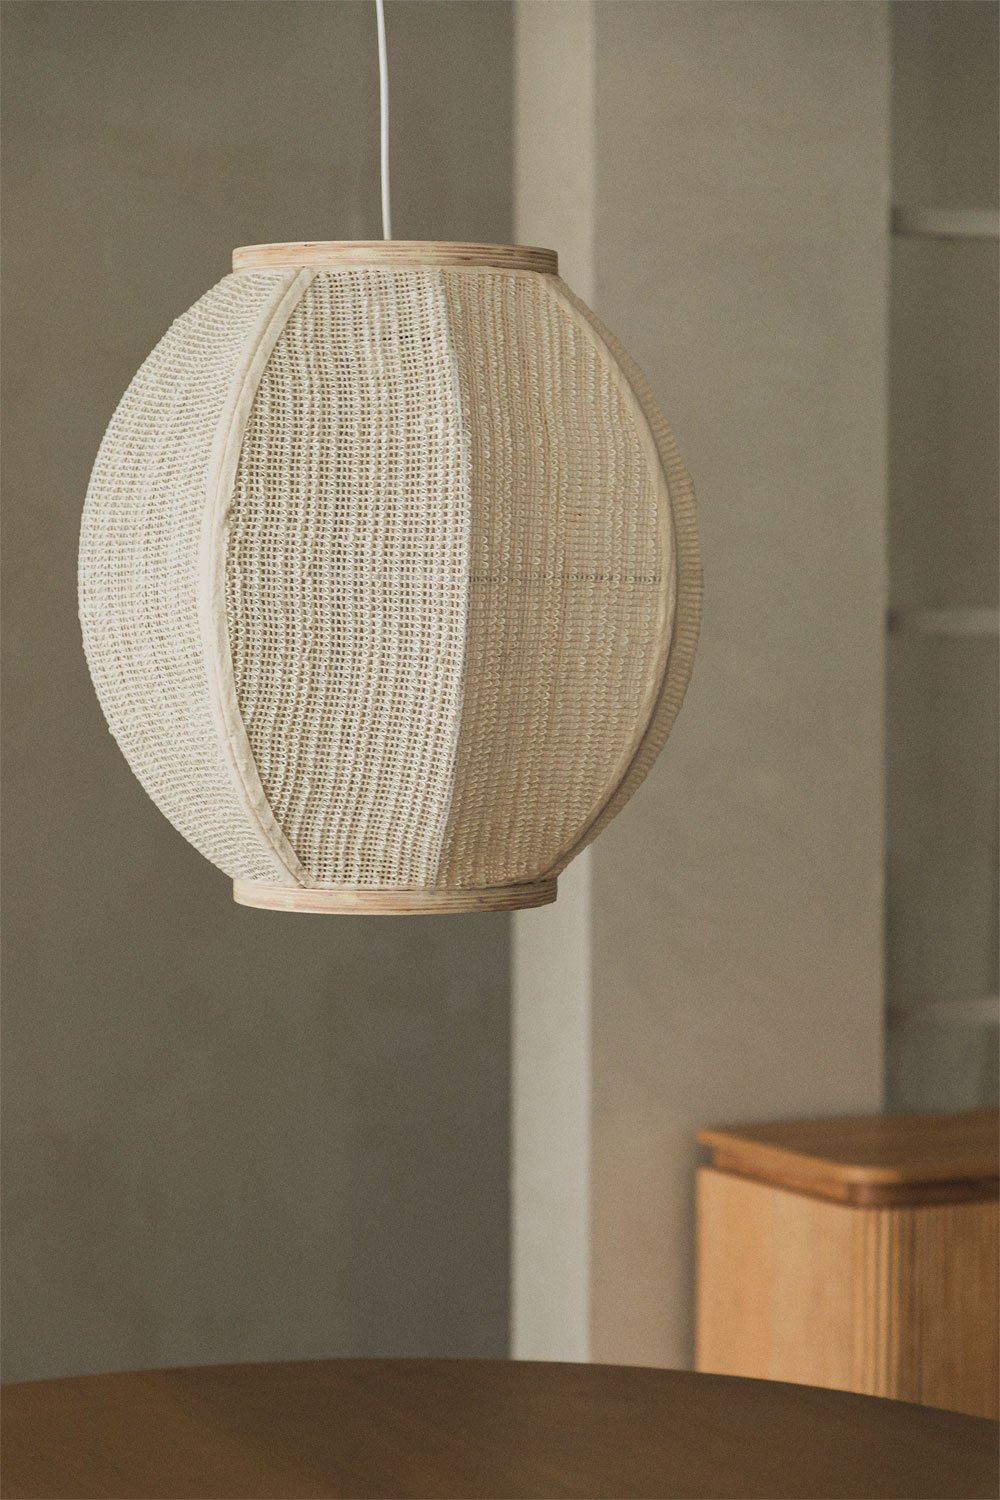 Ziyec Linen Ceiling Lamp, gallery image 1